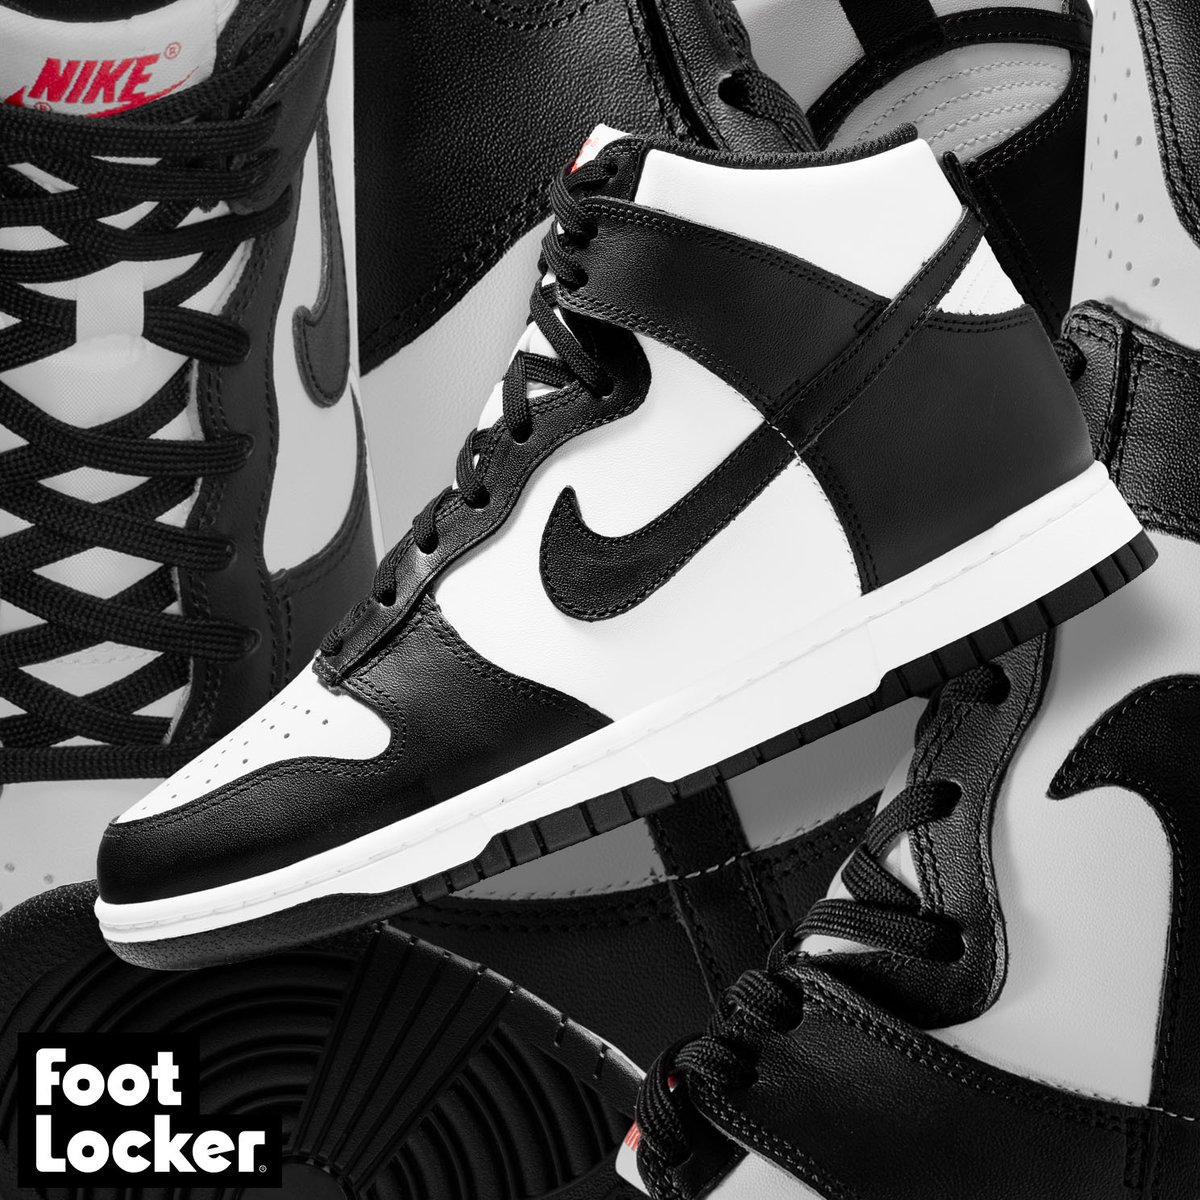 Foot Locker Twitter: "⚫ ⚪ Women's #Nike Dunk is available online. Shop: https://t.co/dBQd3X5HVX https://t.co/sloO6XHr8Y" Twitter